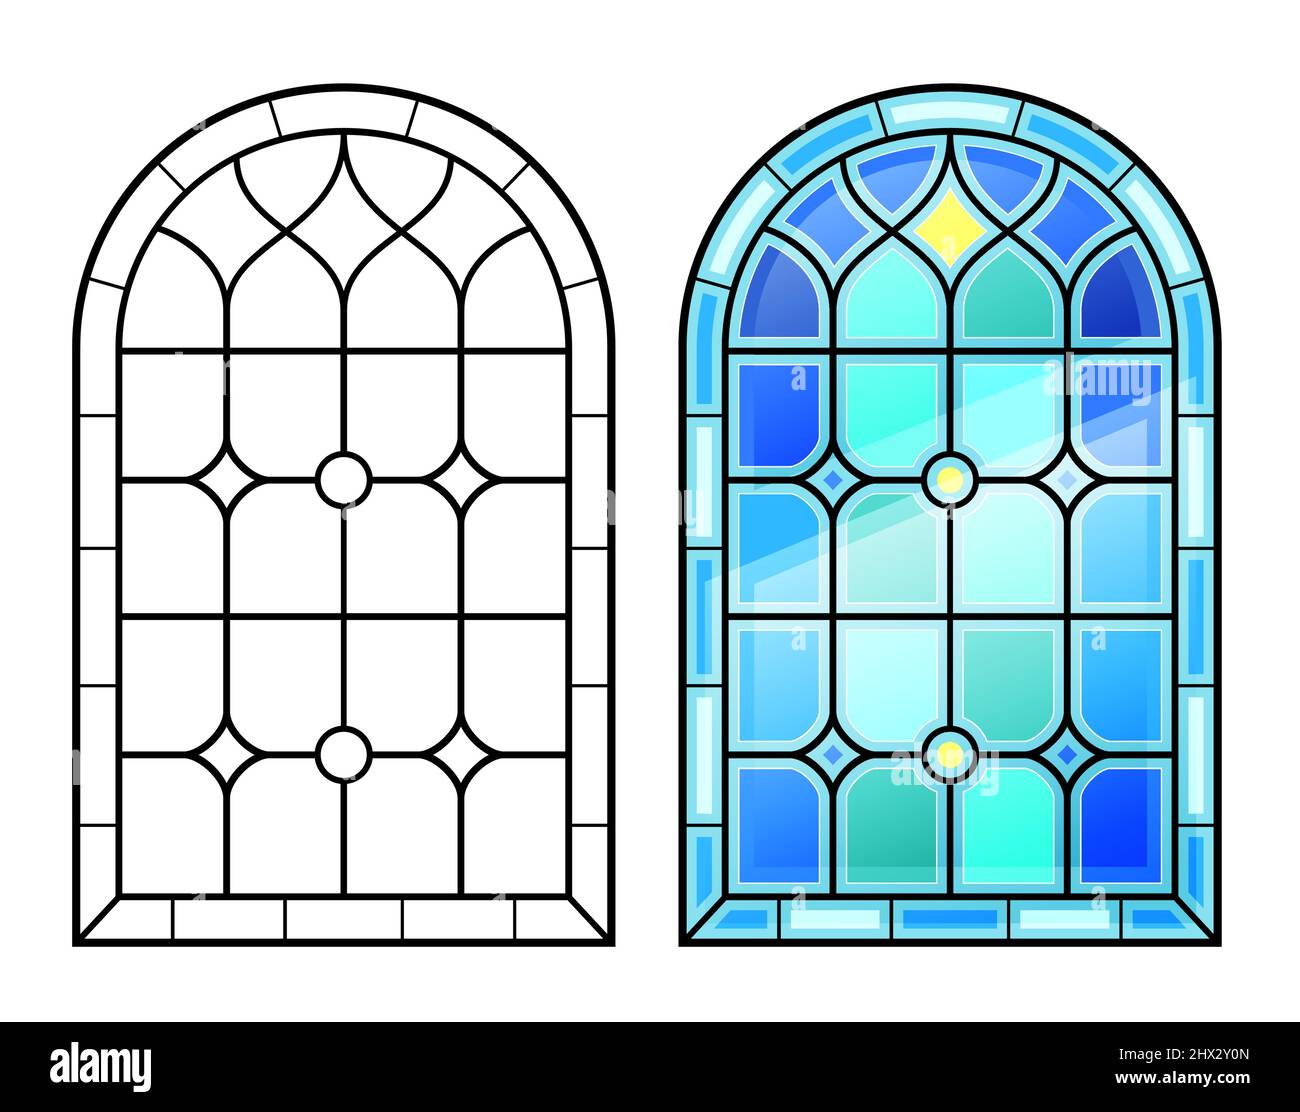 Vecchia finestra ad arco con vetrate colorate Illustrazione Vettoriale